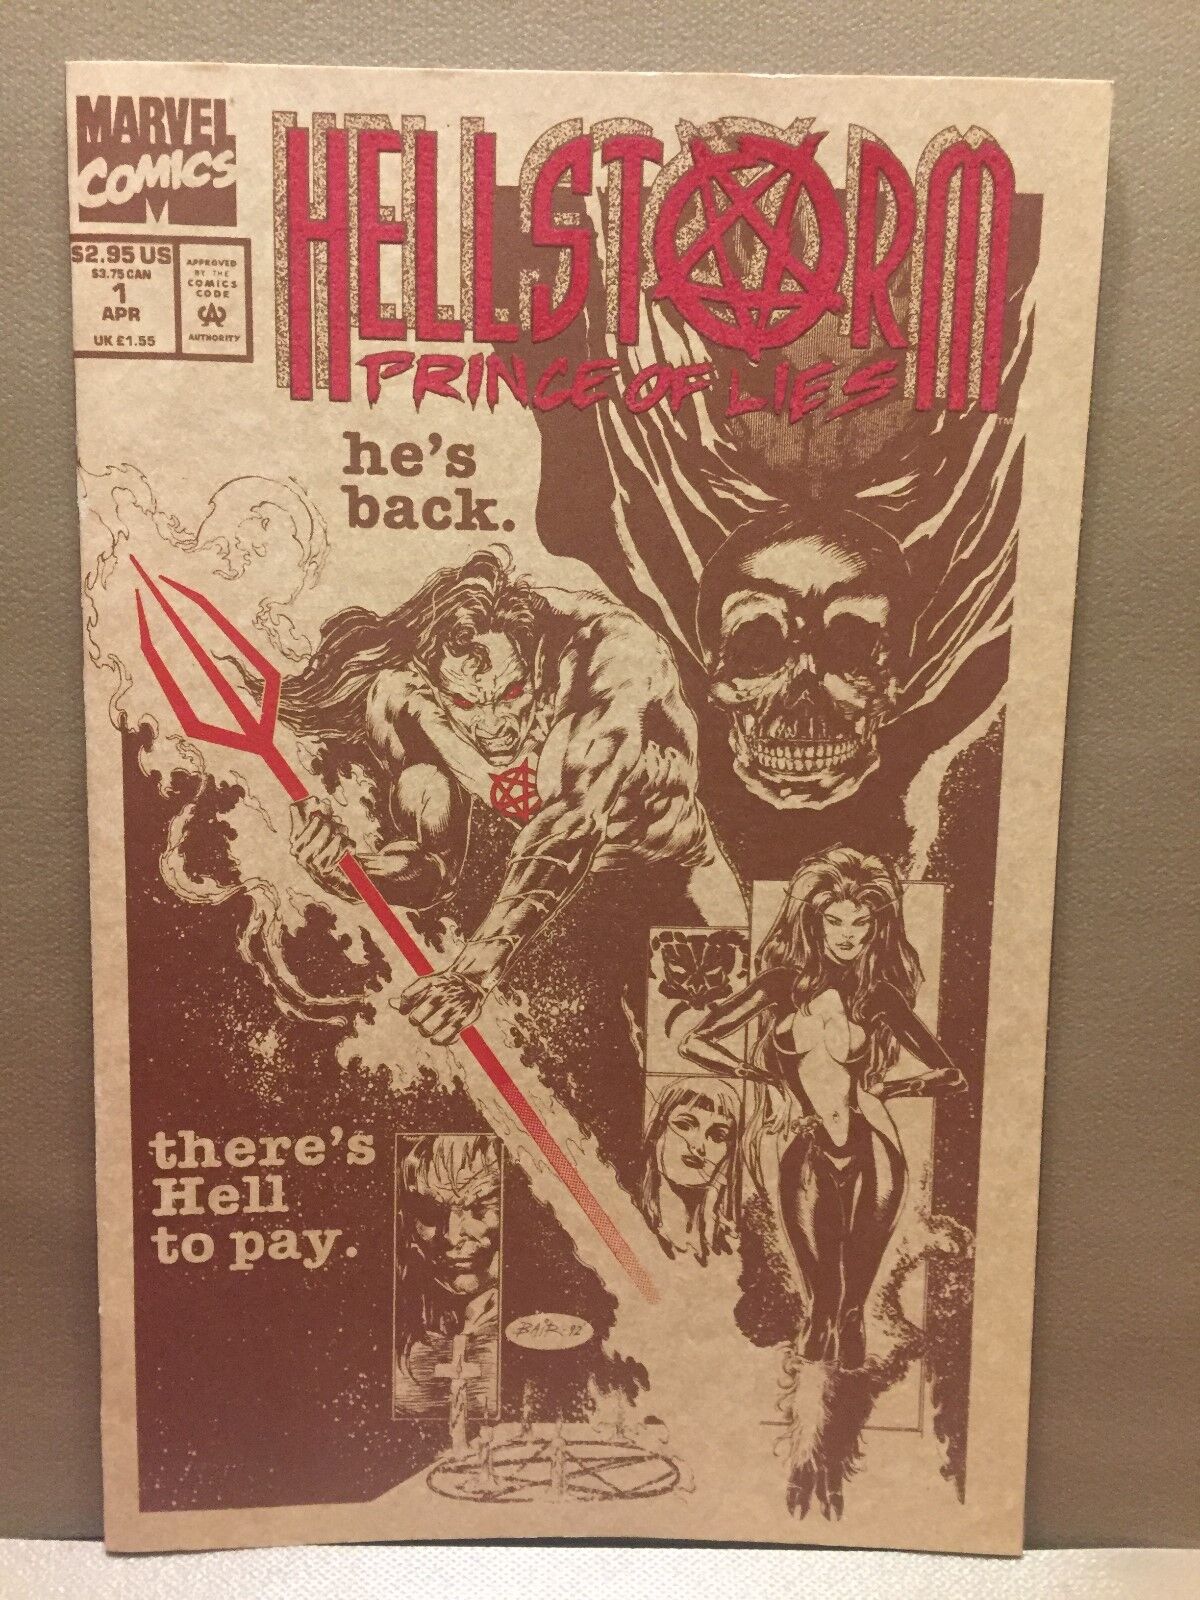 1993 Marvel Comics Hellstorm #1 Comic Book